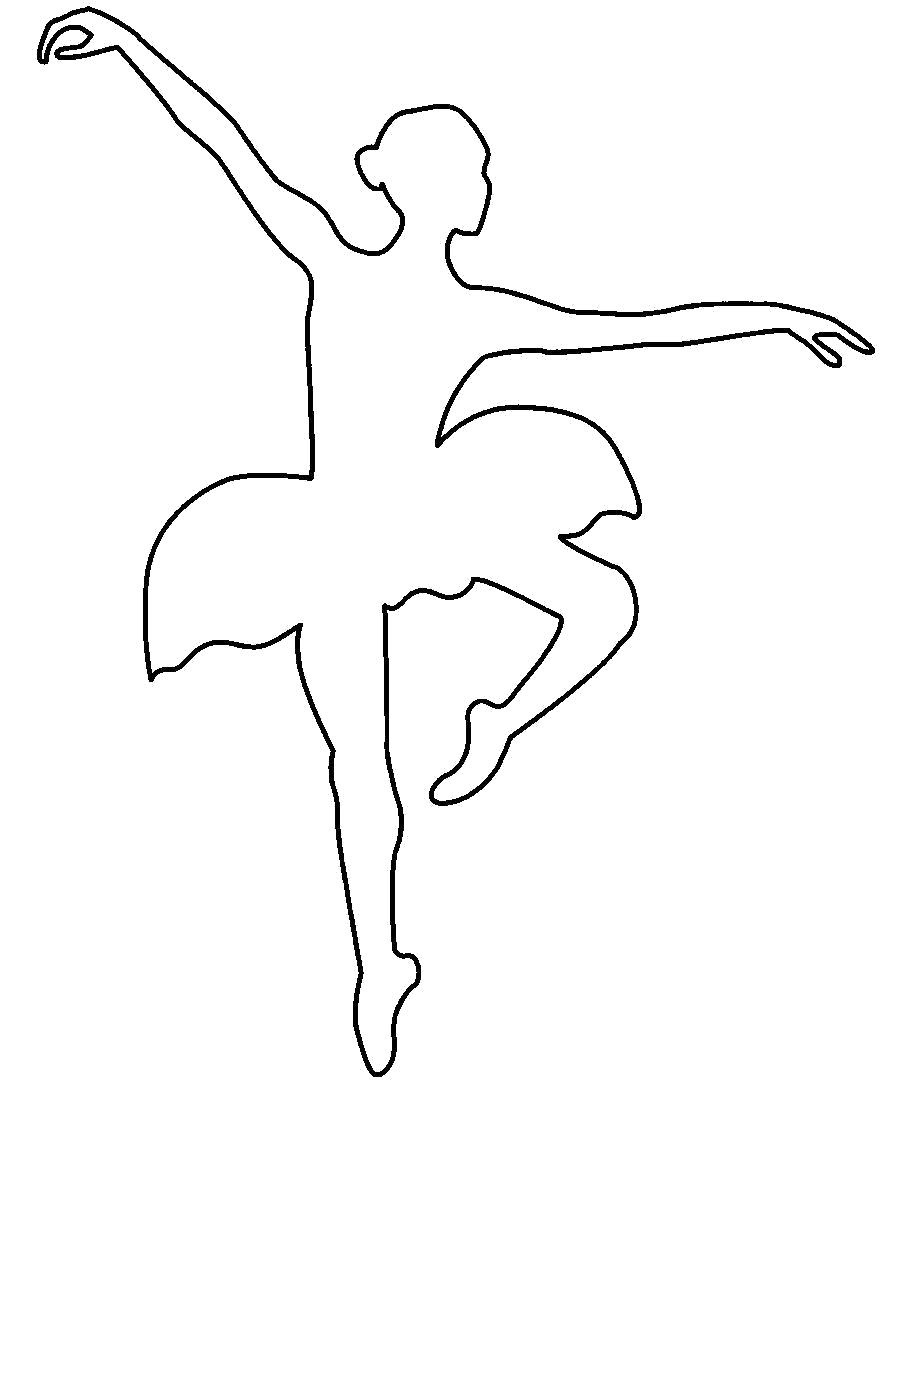 Раскраска Раскраски шаблоны балерин балерина в прыжке контур для вырезания из бумаги. Шаблон